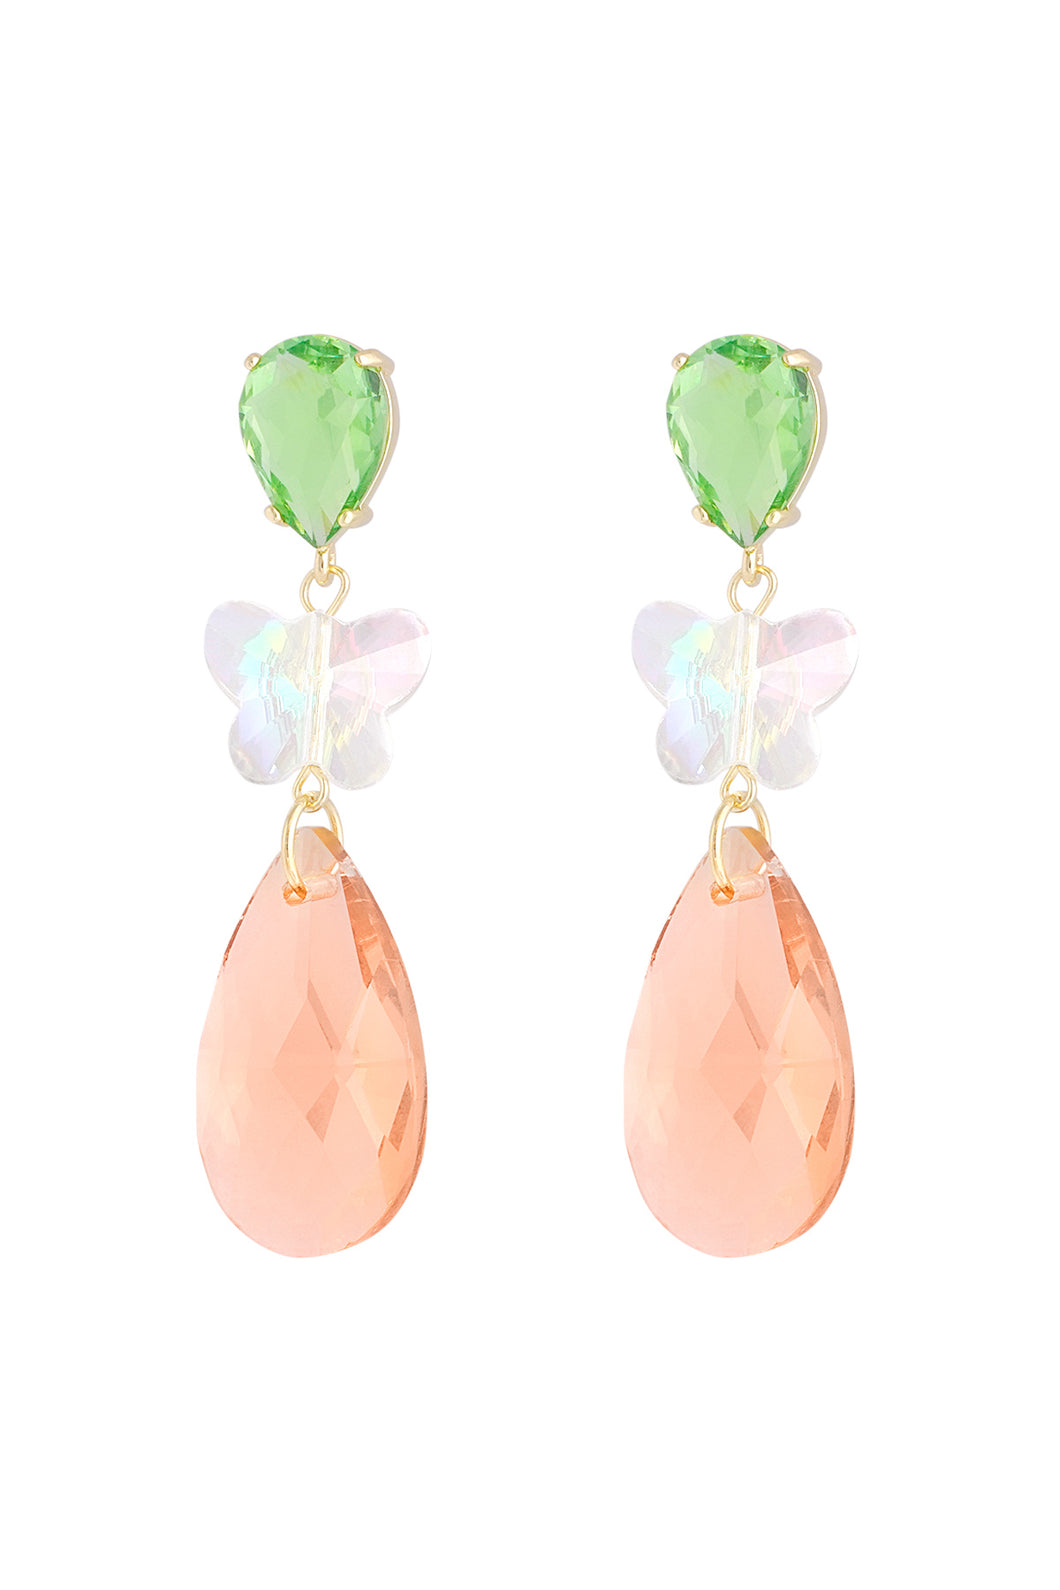 Butterfly Dream Earrings - green/orange